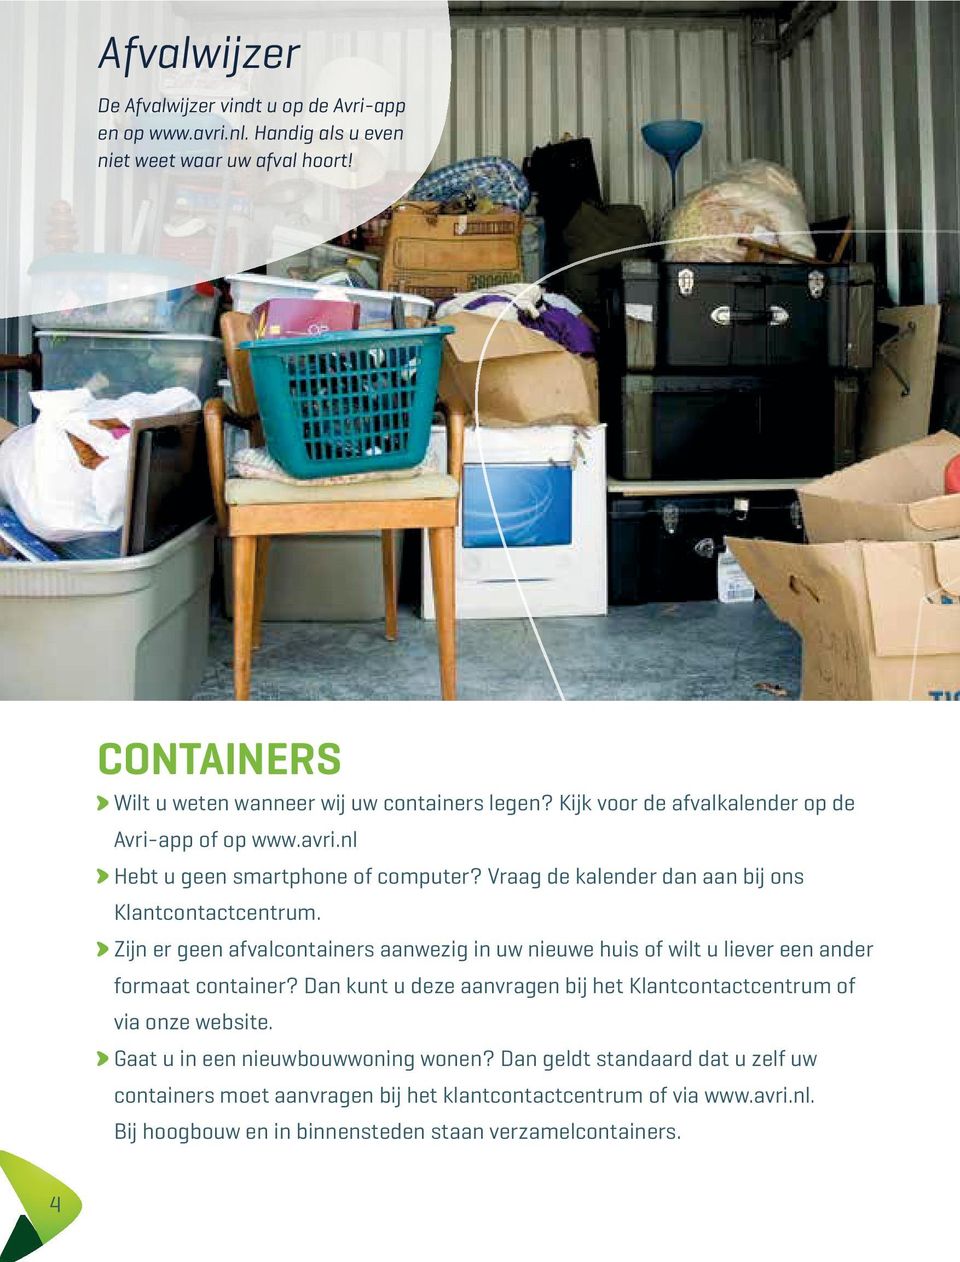 Zijn er geen afvalcontainers aanwezig in uw nieuwe huis of wilt u liever een ander formaat container? Dan kunt u deze aanvragen bij het Klantcontactcentrum of via onze website.